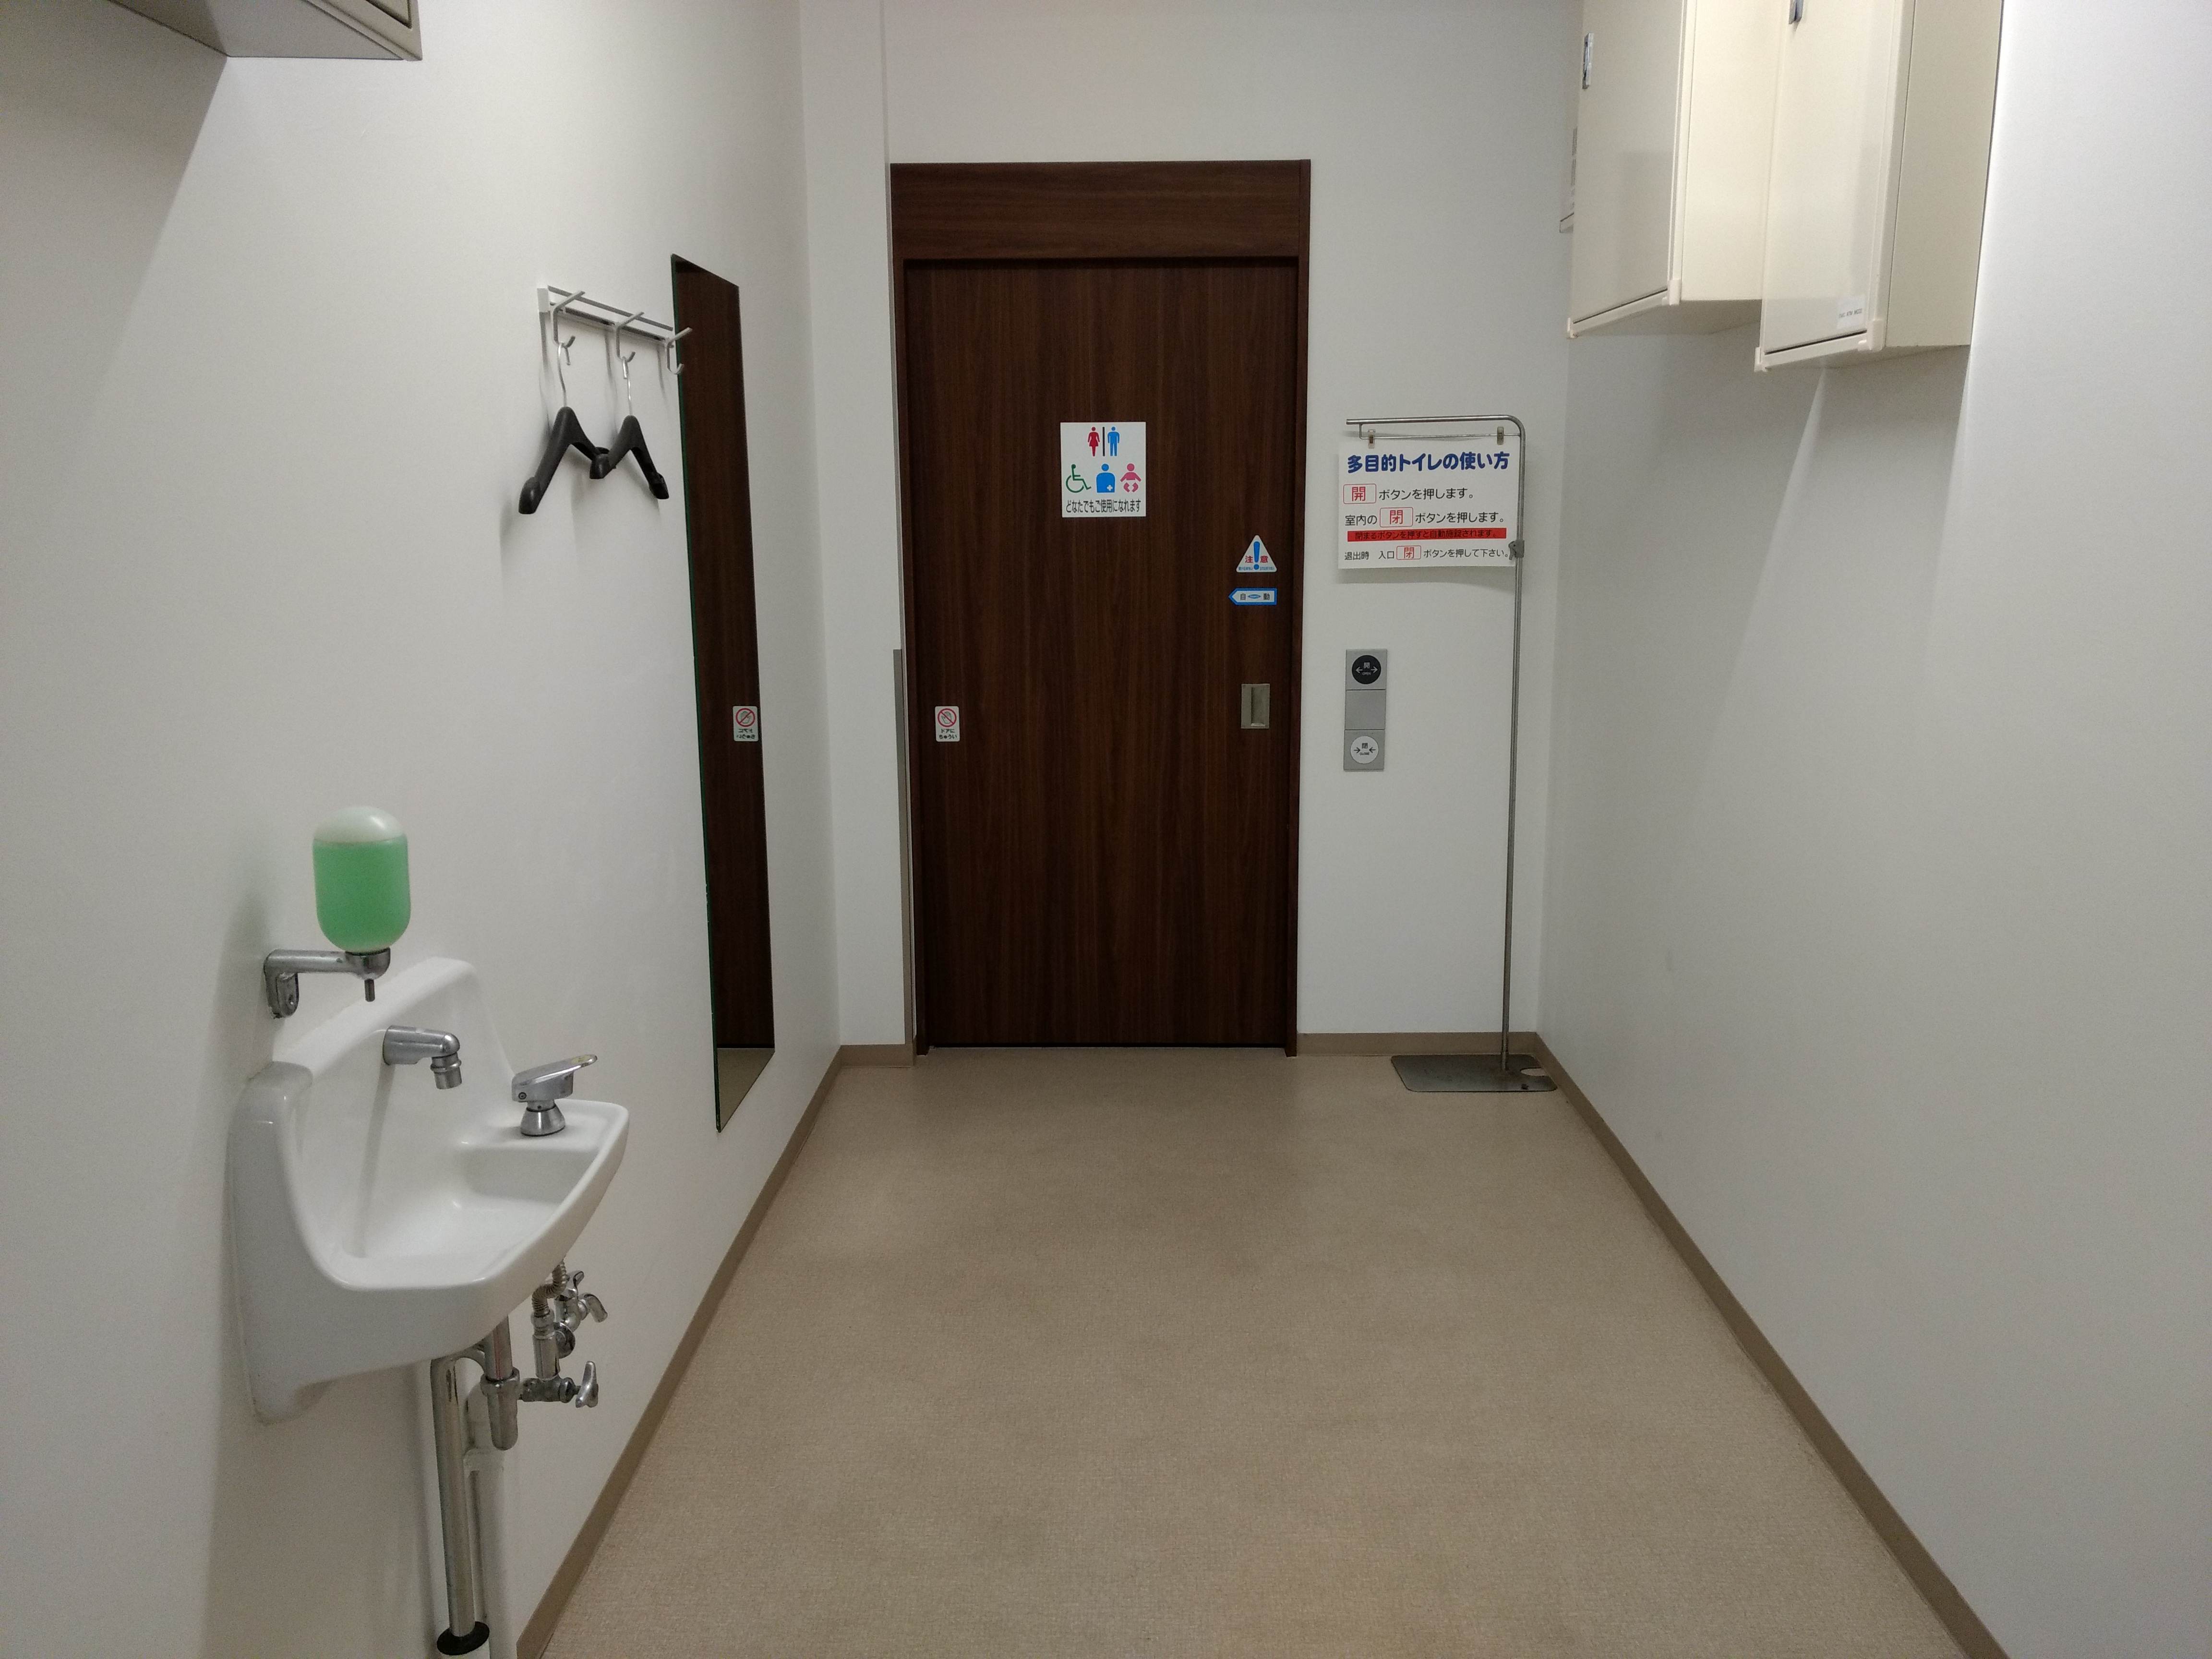 ダイエー/上溝店【多目的トイレがあんなところに⁉】 Shirokuma Bihitasu的トイレガイド。˙ᴥ˙